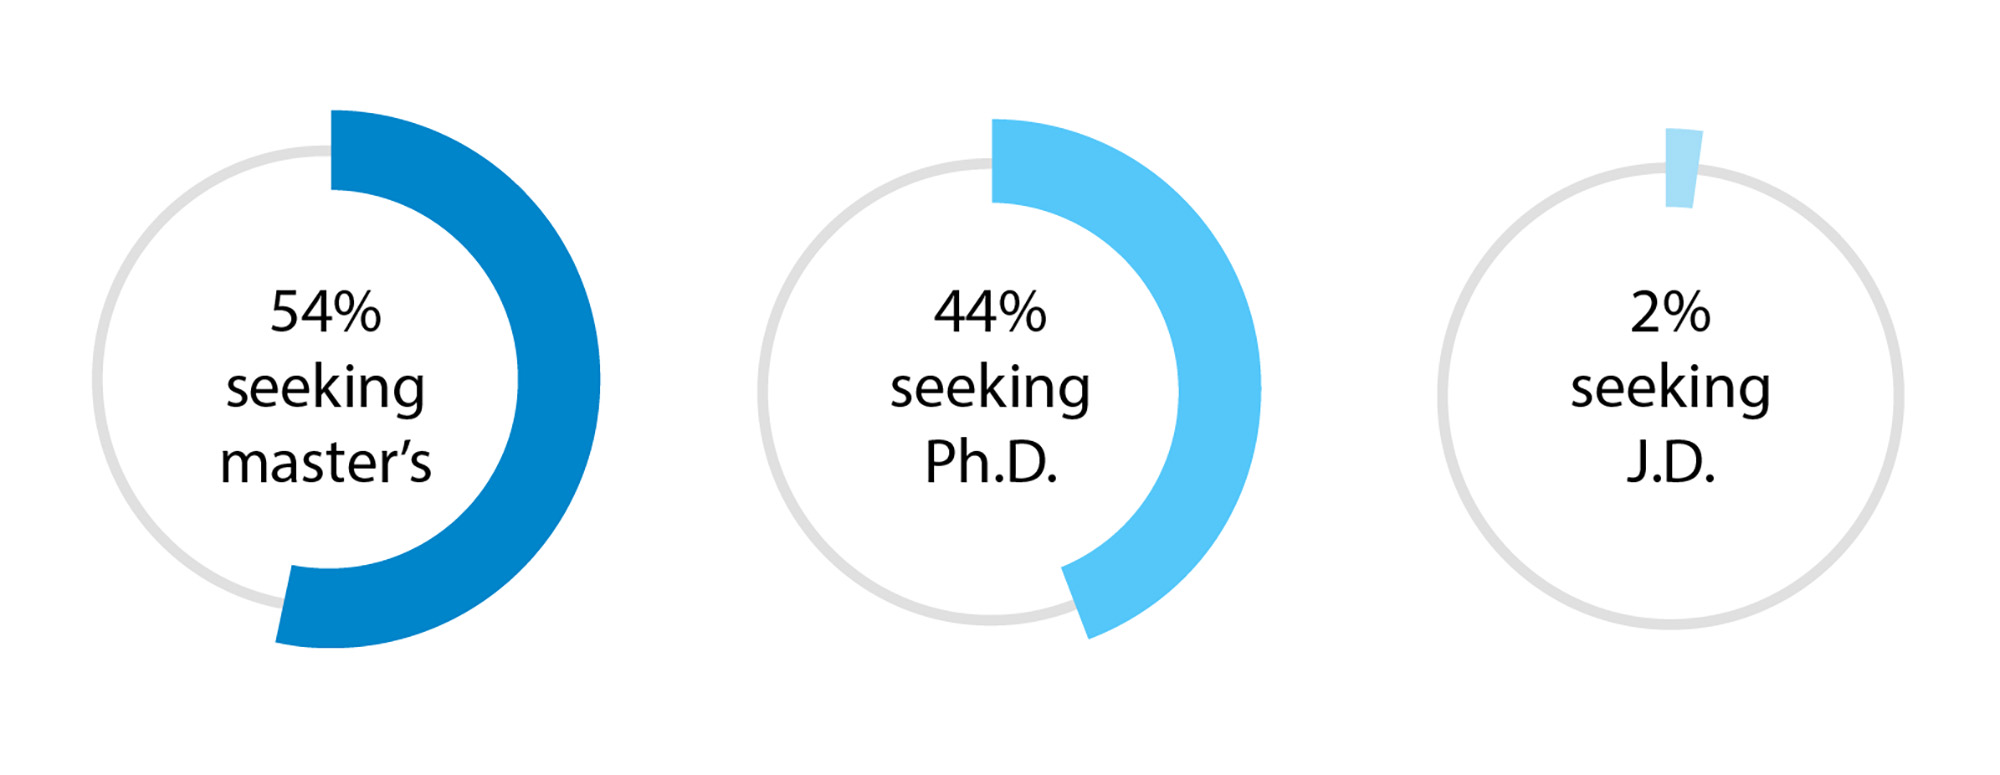 54% seeking master's; 44% seeking Ph.D.; 2% seeking J.D.